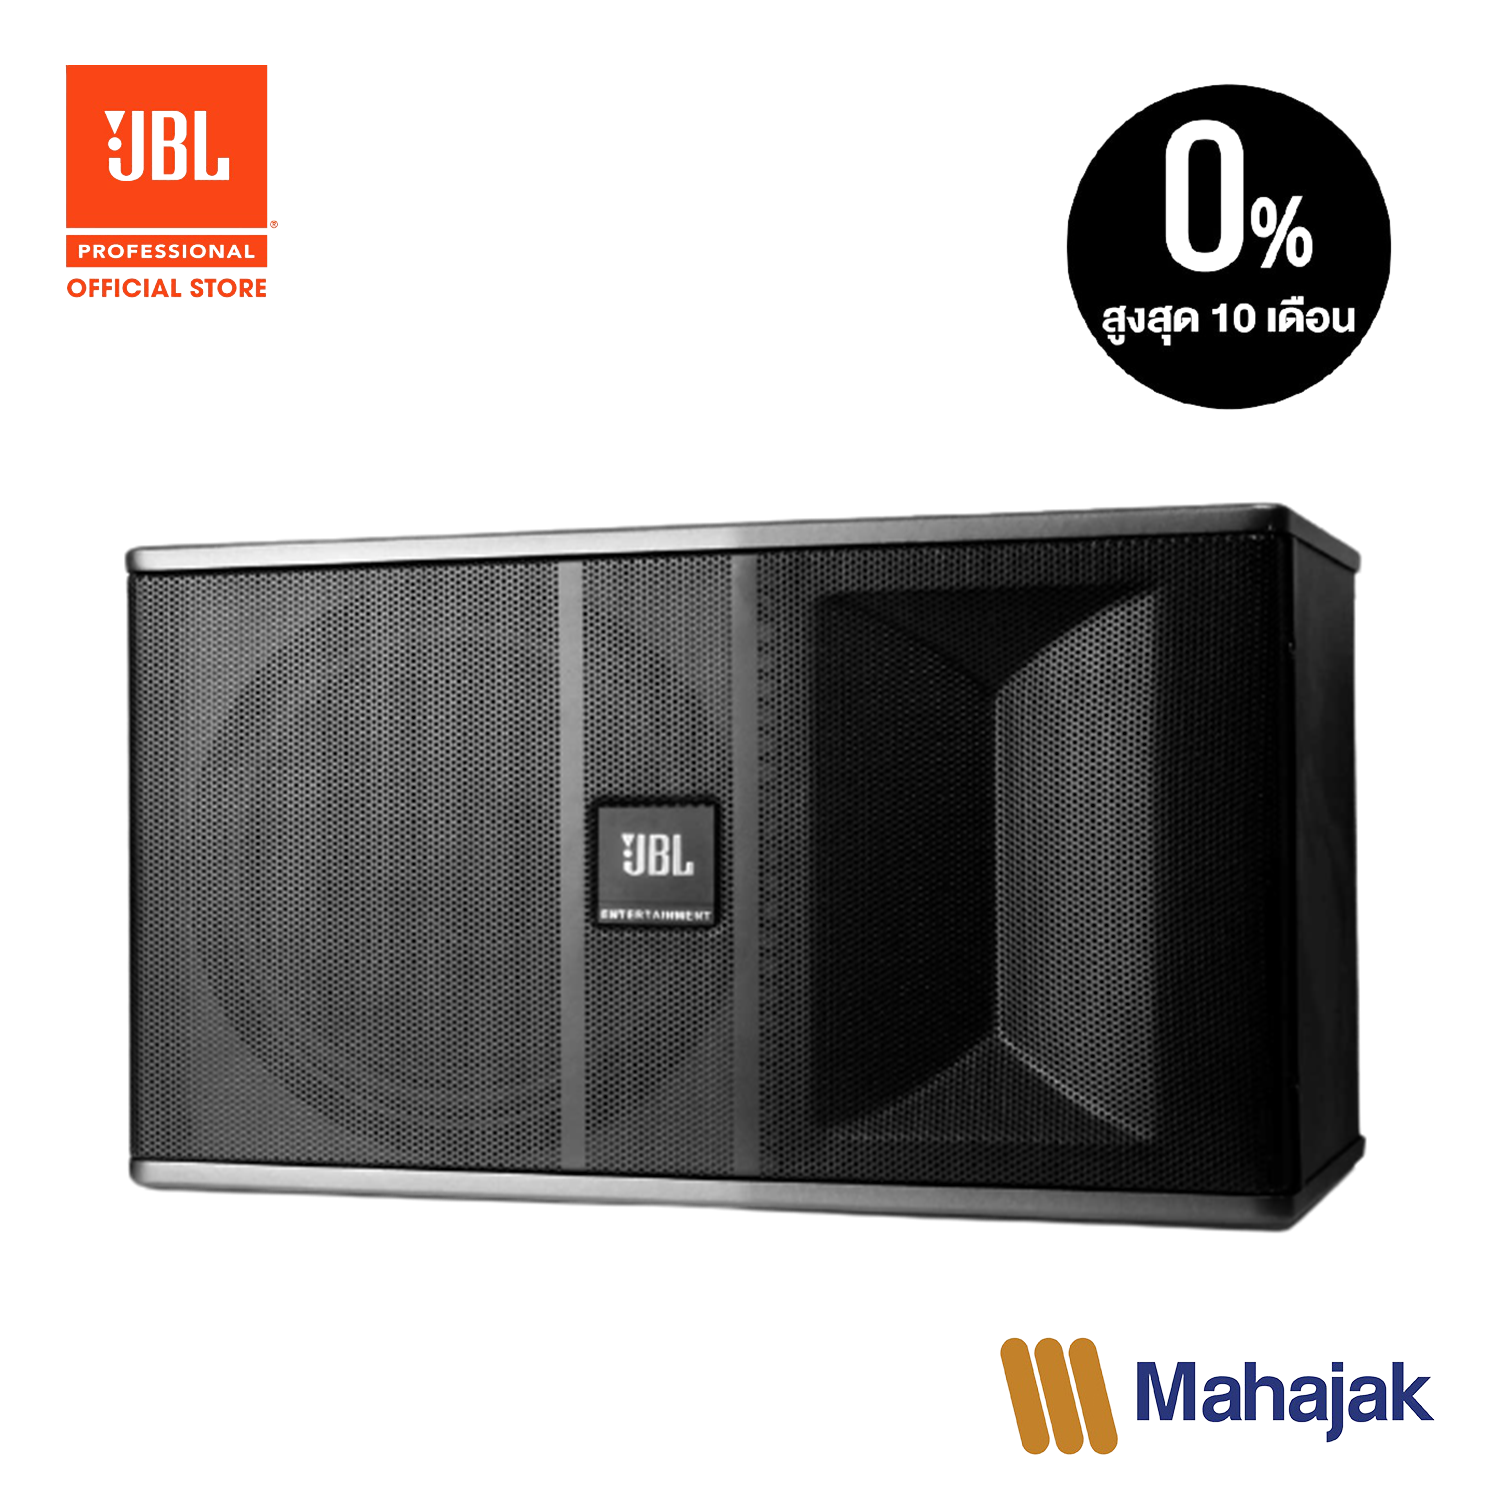 JBL Ki81 is a 2-way full range speaker designed for the karaoke markeT